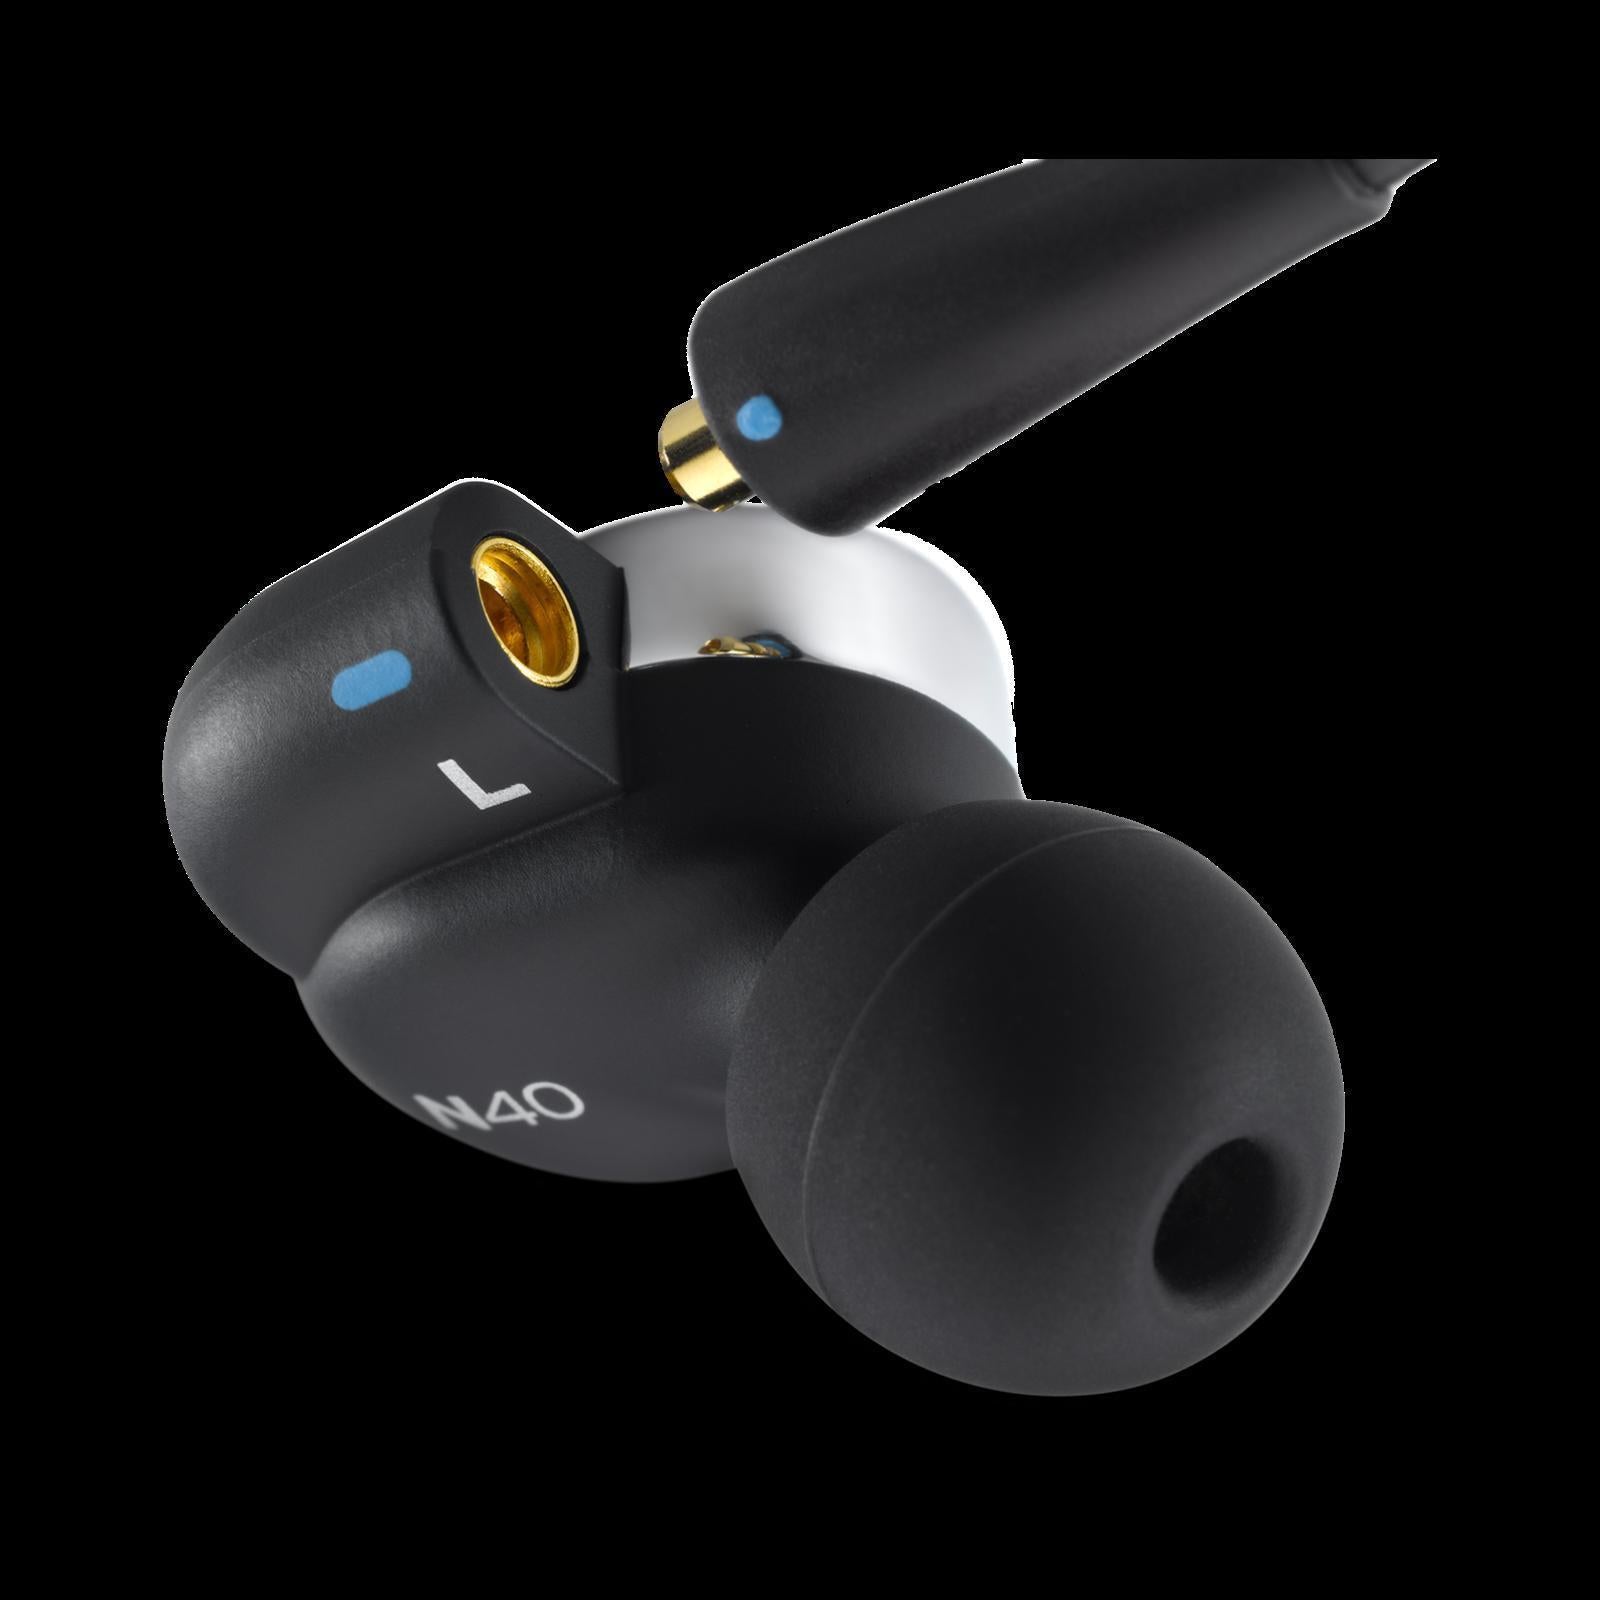 AKG N40 Customizable Hi-Res In-Ear Headphones